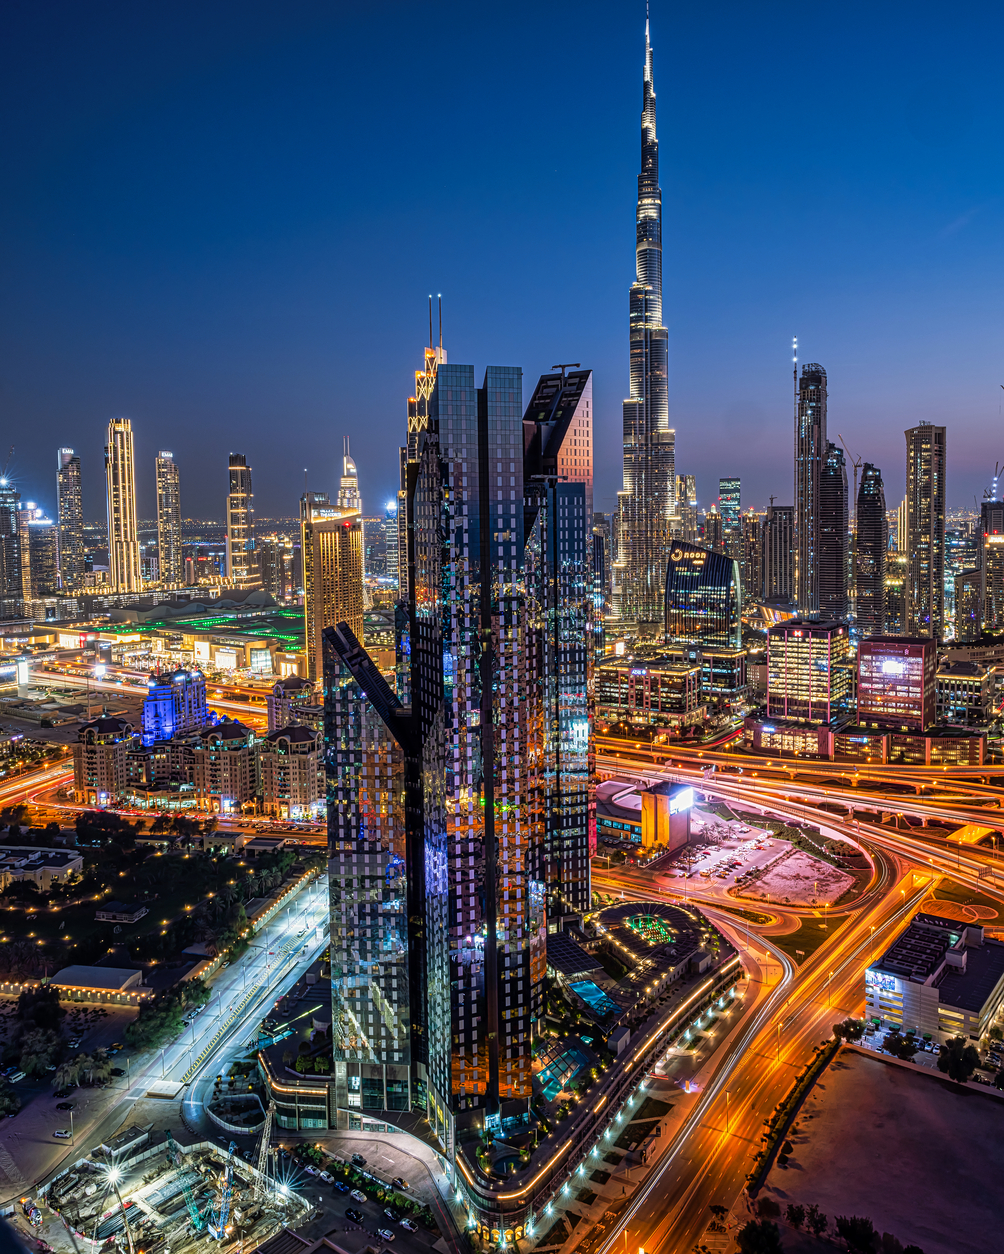 أبراج سنترال بارك في مركز دبي المالي العالمي تكشف عن مساحات مكتبية جديدة